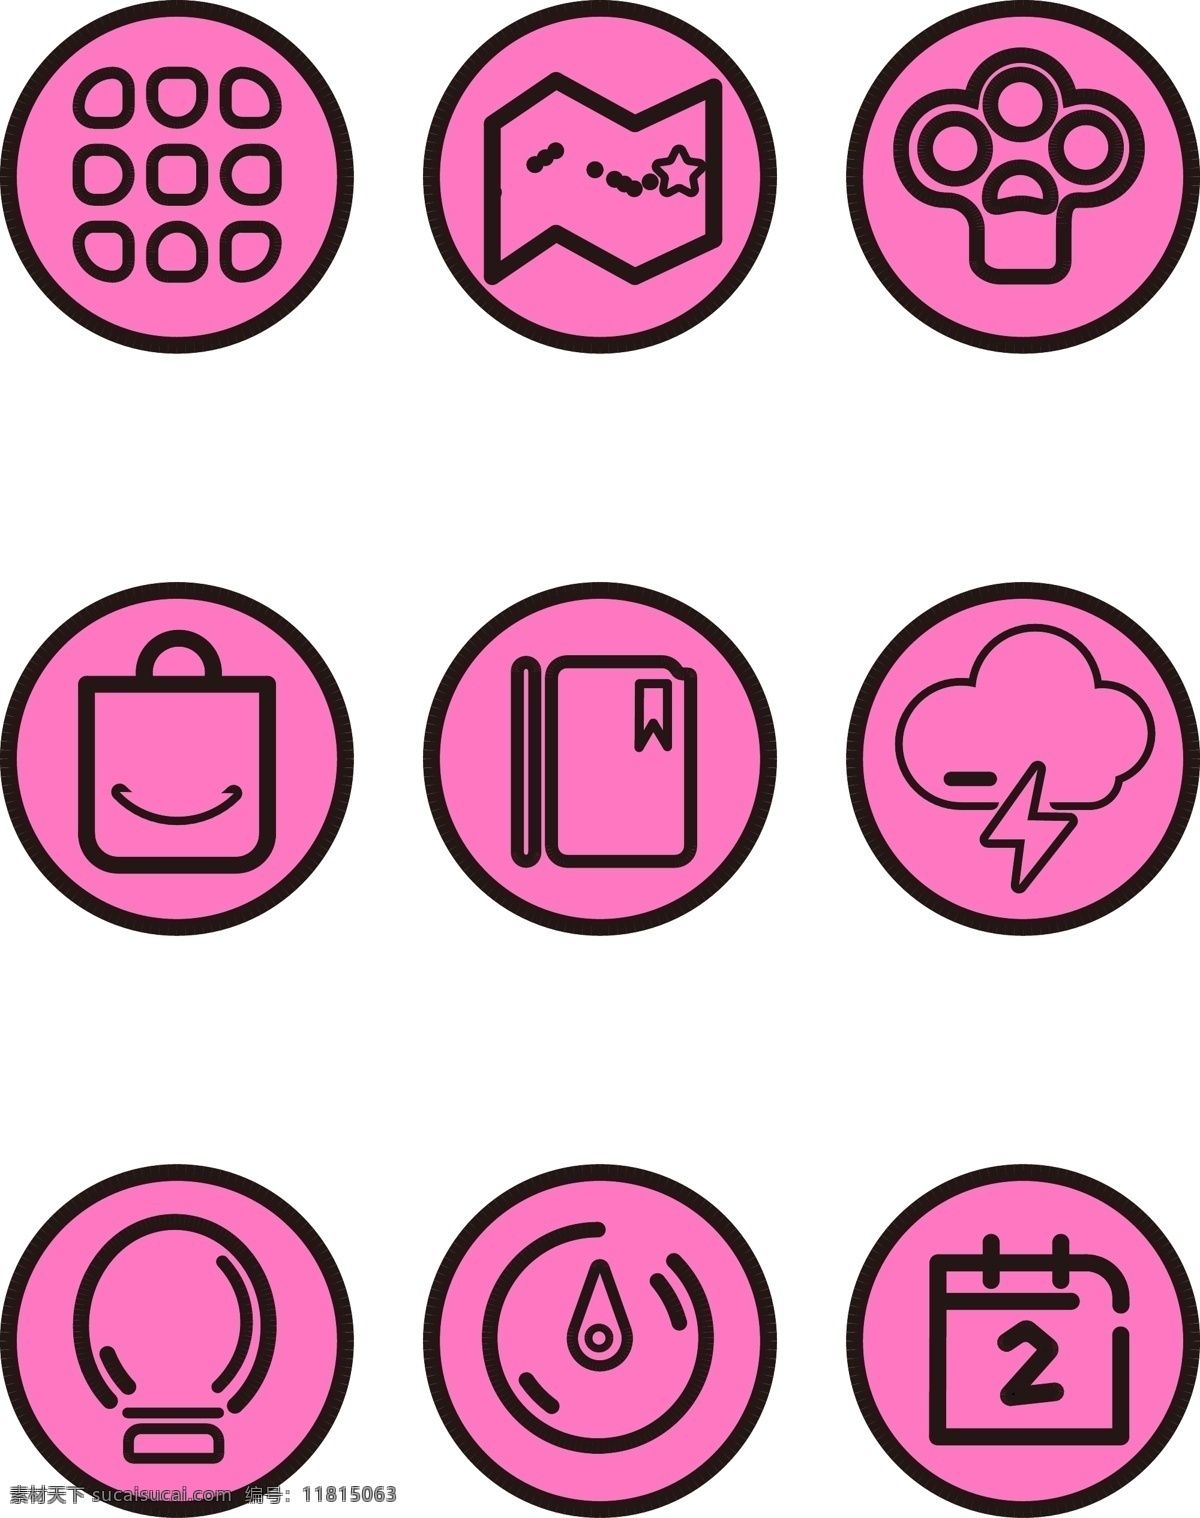 手机 主题 粉色 卡通 app 小 图标素材 a pp